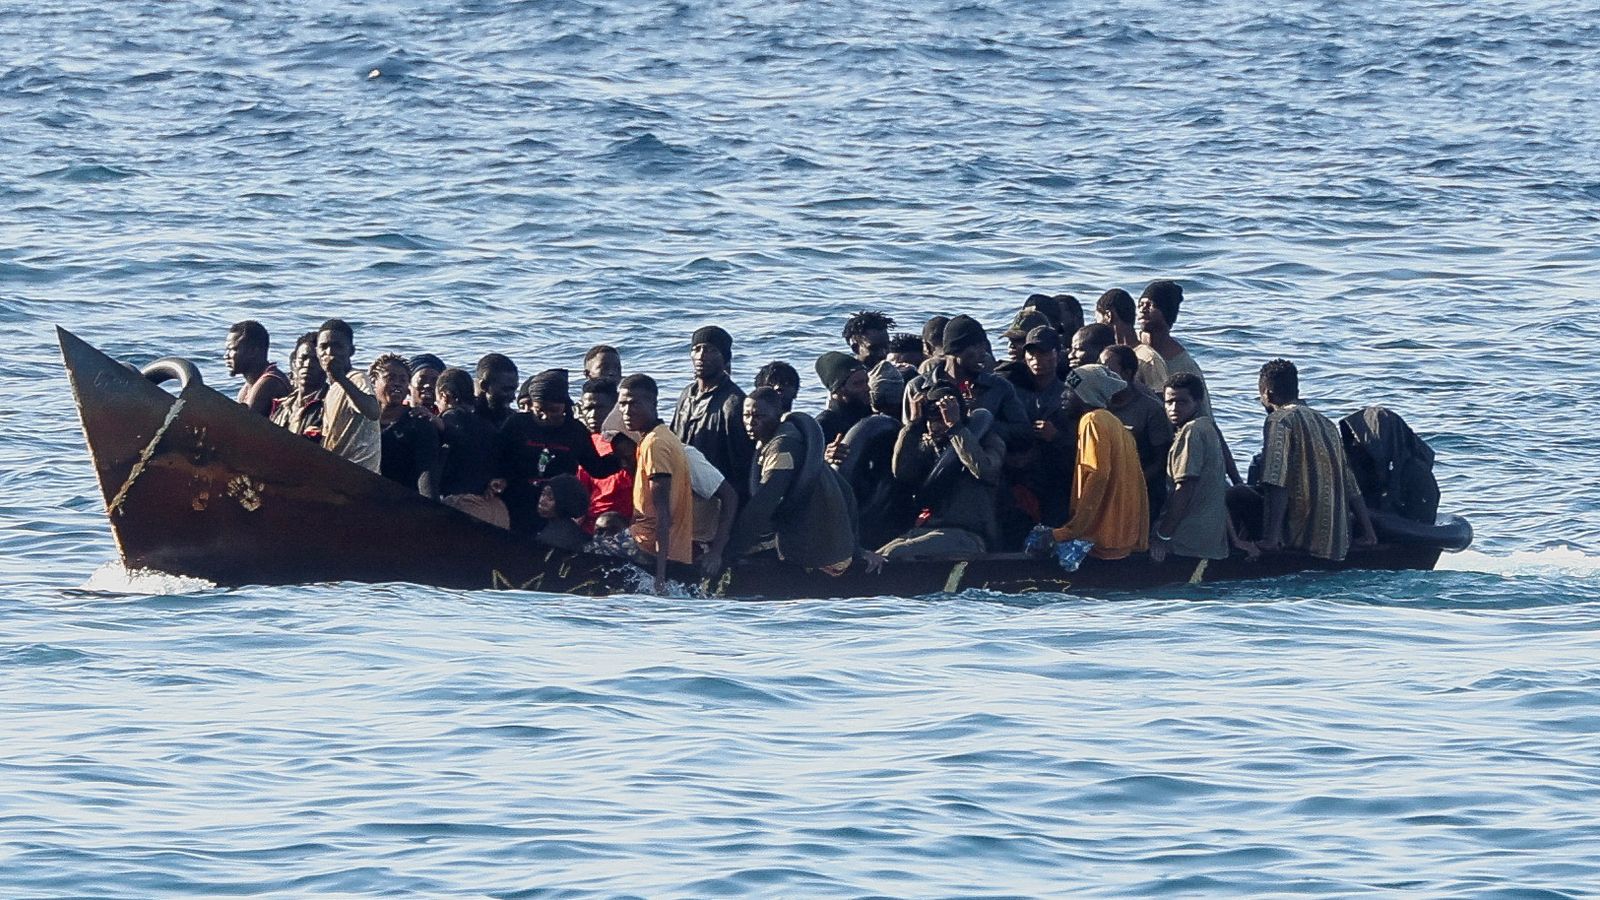 イタリアが移民急増に苦しむなか、ランペドゥーサ島沖の移民船で新生児が死亡しているのが発見される | ニュース世界のニュース